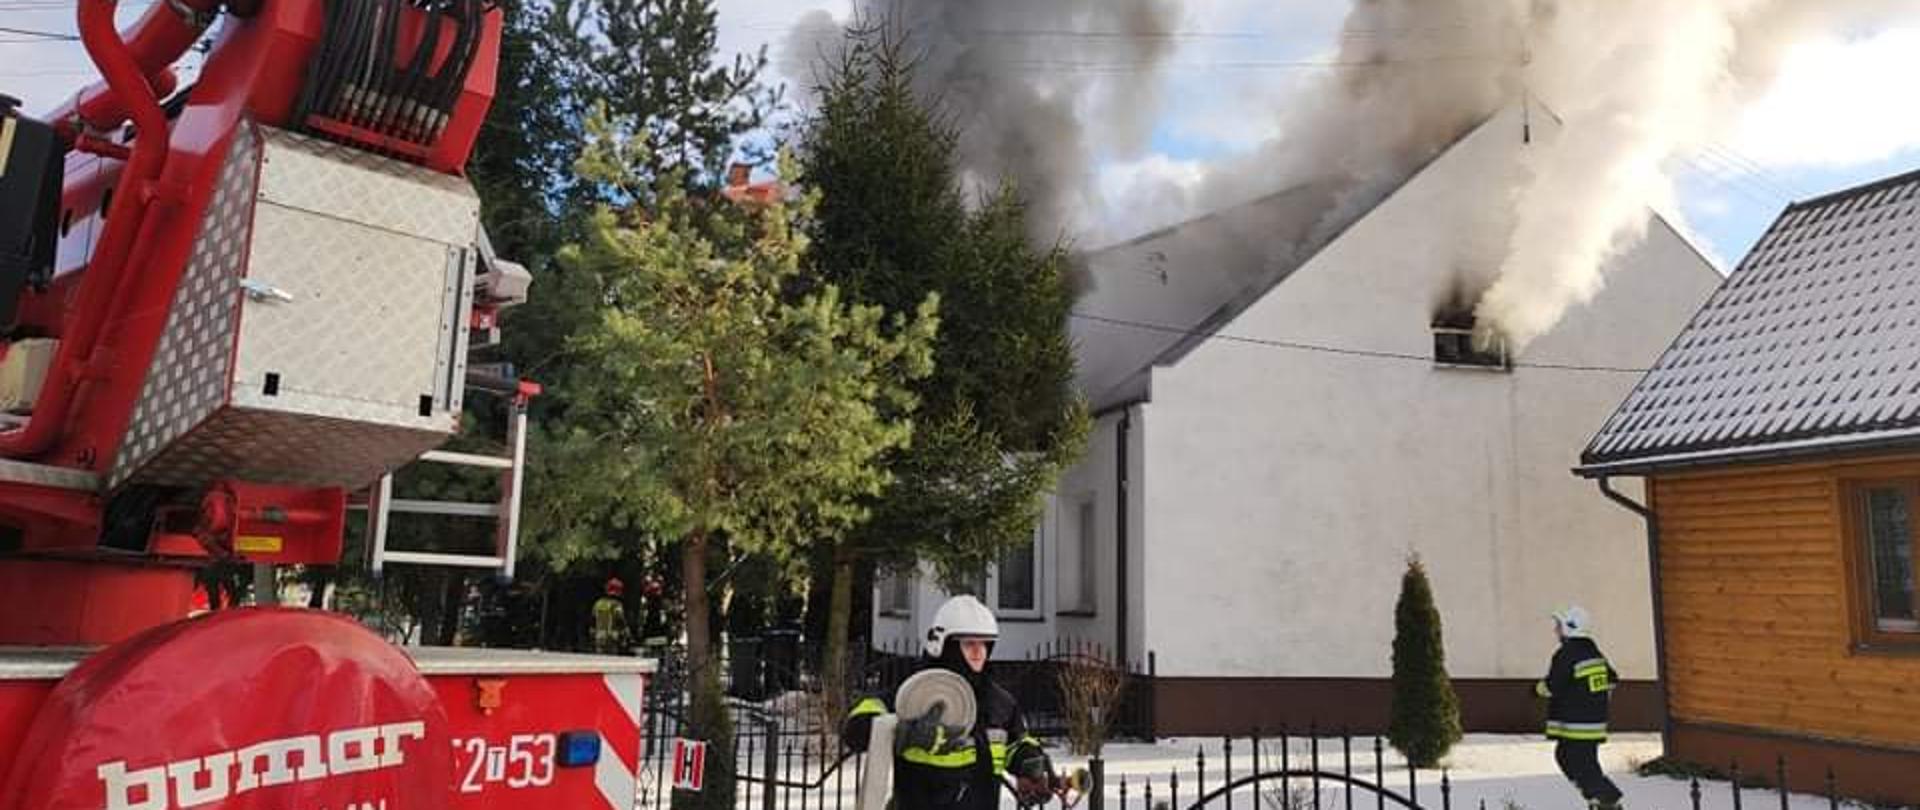 Na zdjęciu widać wydobywający się dym z poddasza oraz dachu w budynku mieszkalnym jednorodzinnym w Kunowie. Na pierwszym planie widać strażaka przy samochodzie strażackim, który z wężem w ręku przystępuje do jego rozwinięcia. W tle pożar budynku.